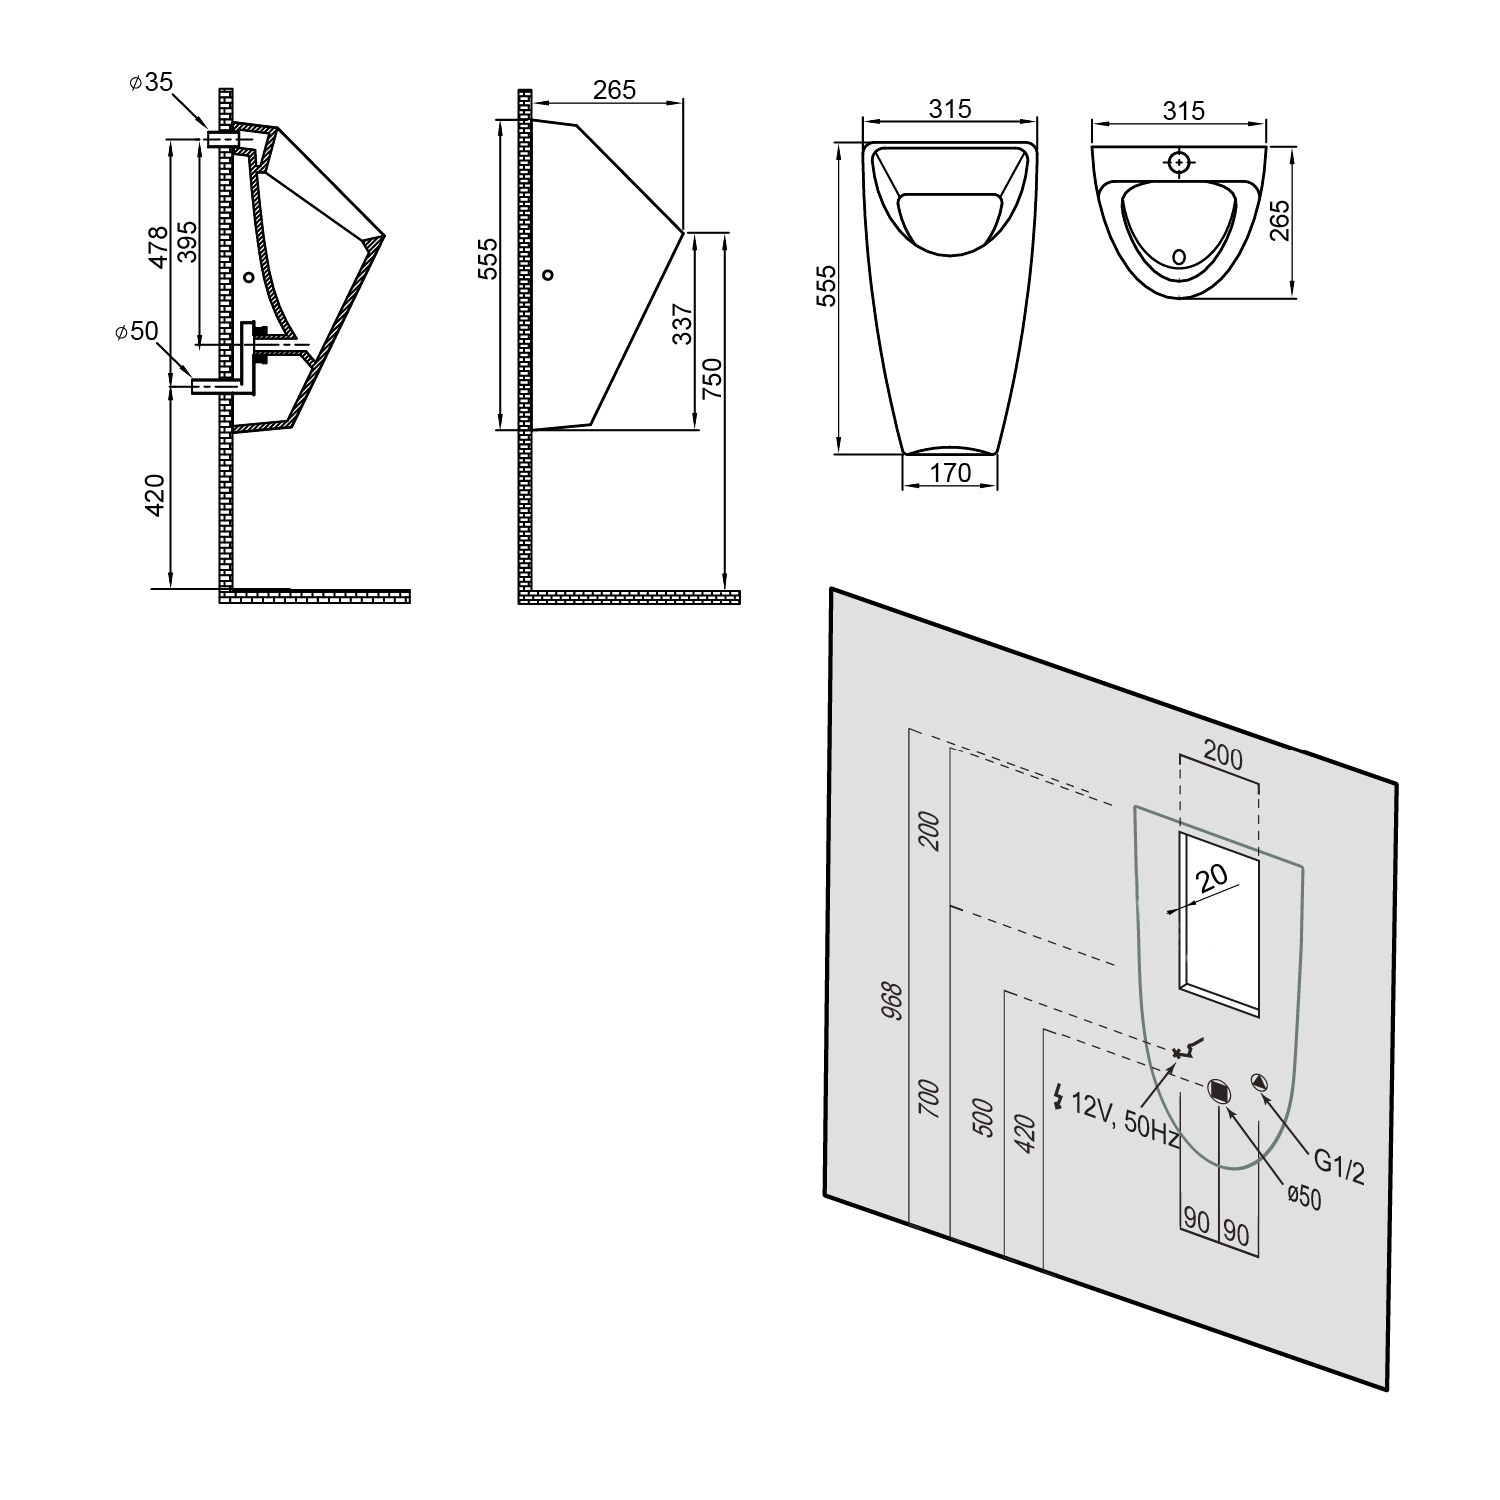 SCHWARN Selbstspülendes Urinal 6V DC, verdeckter Wasseranschluss